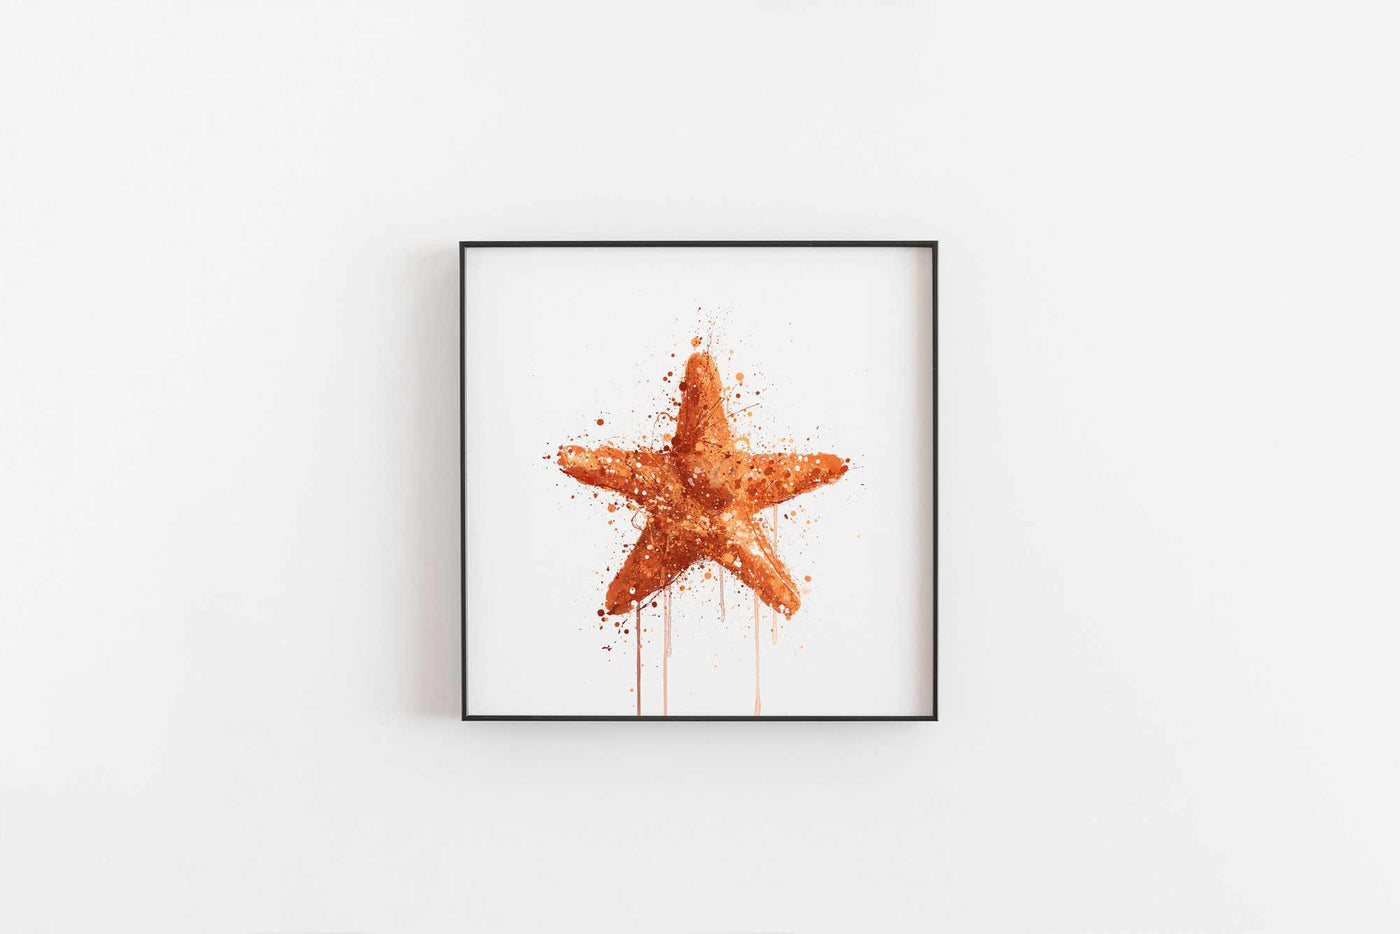 Sea Creature Wall Art Print 'Starfish'-We Love Prints